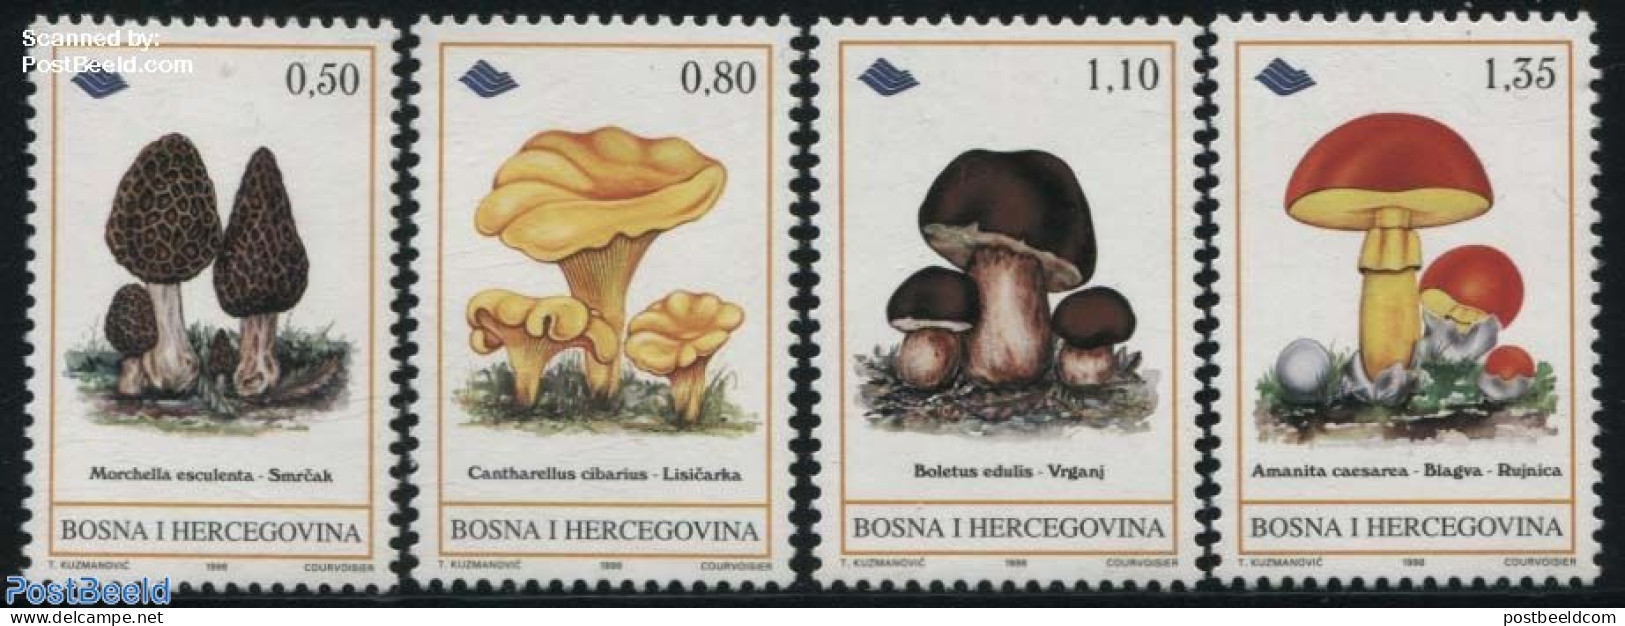 Bosnia Herzegovina 1998 Eatable Mushrooms 4v, Mint NH, Nature - Mushrooms - Hongos